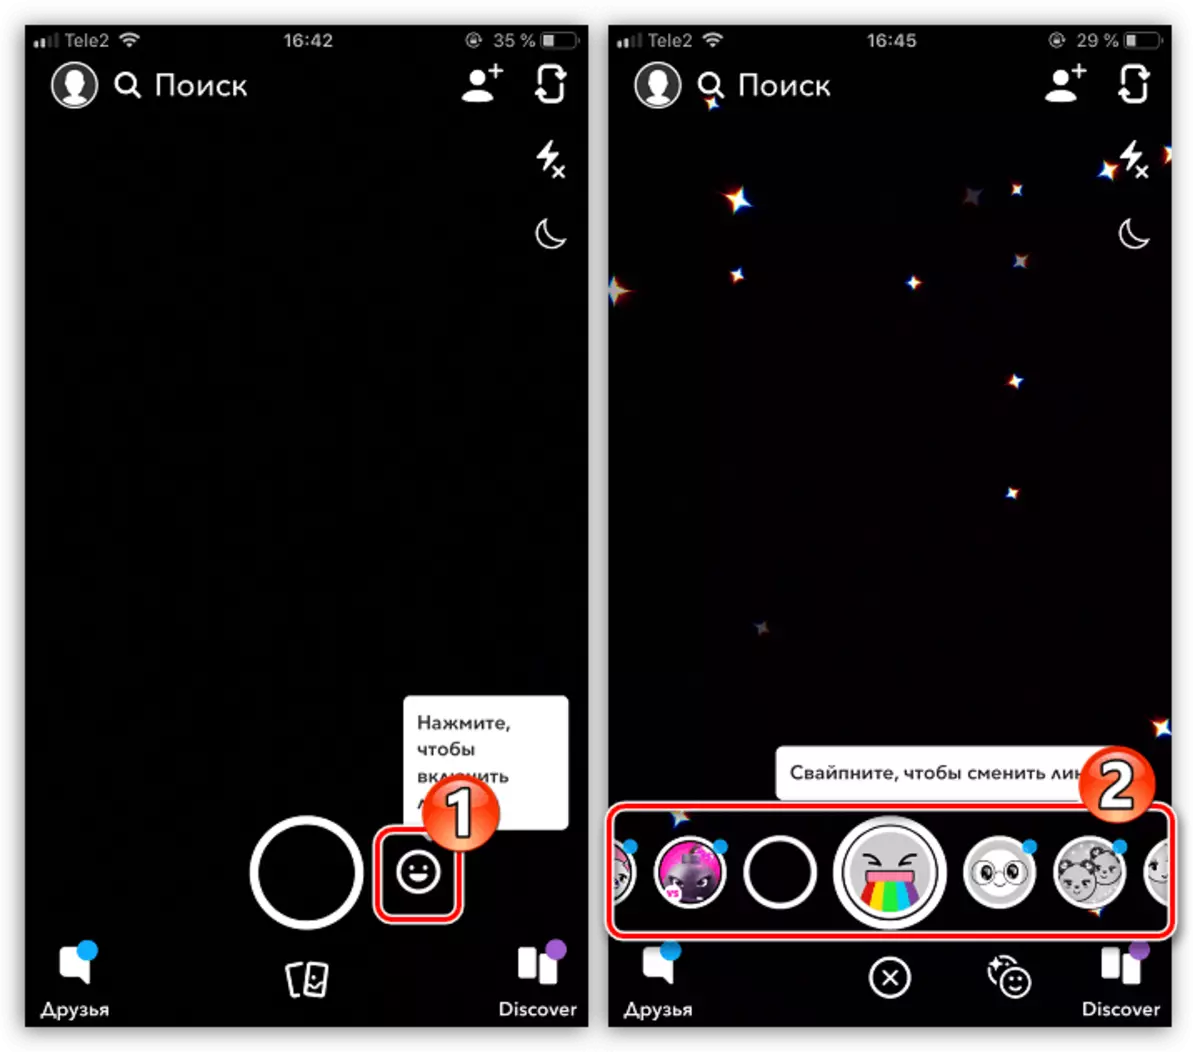 Naglo-load ng mga mask sa application ng SnapChat sa iPhone